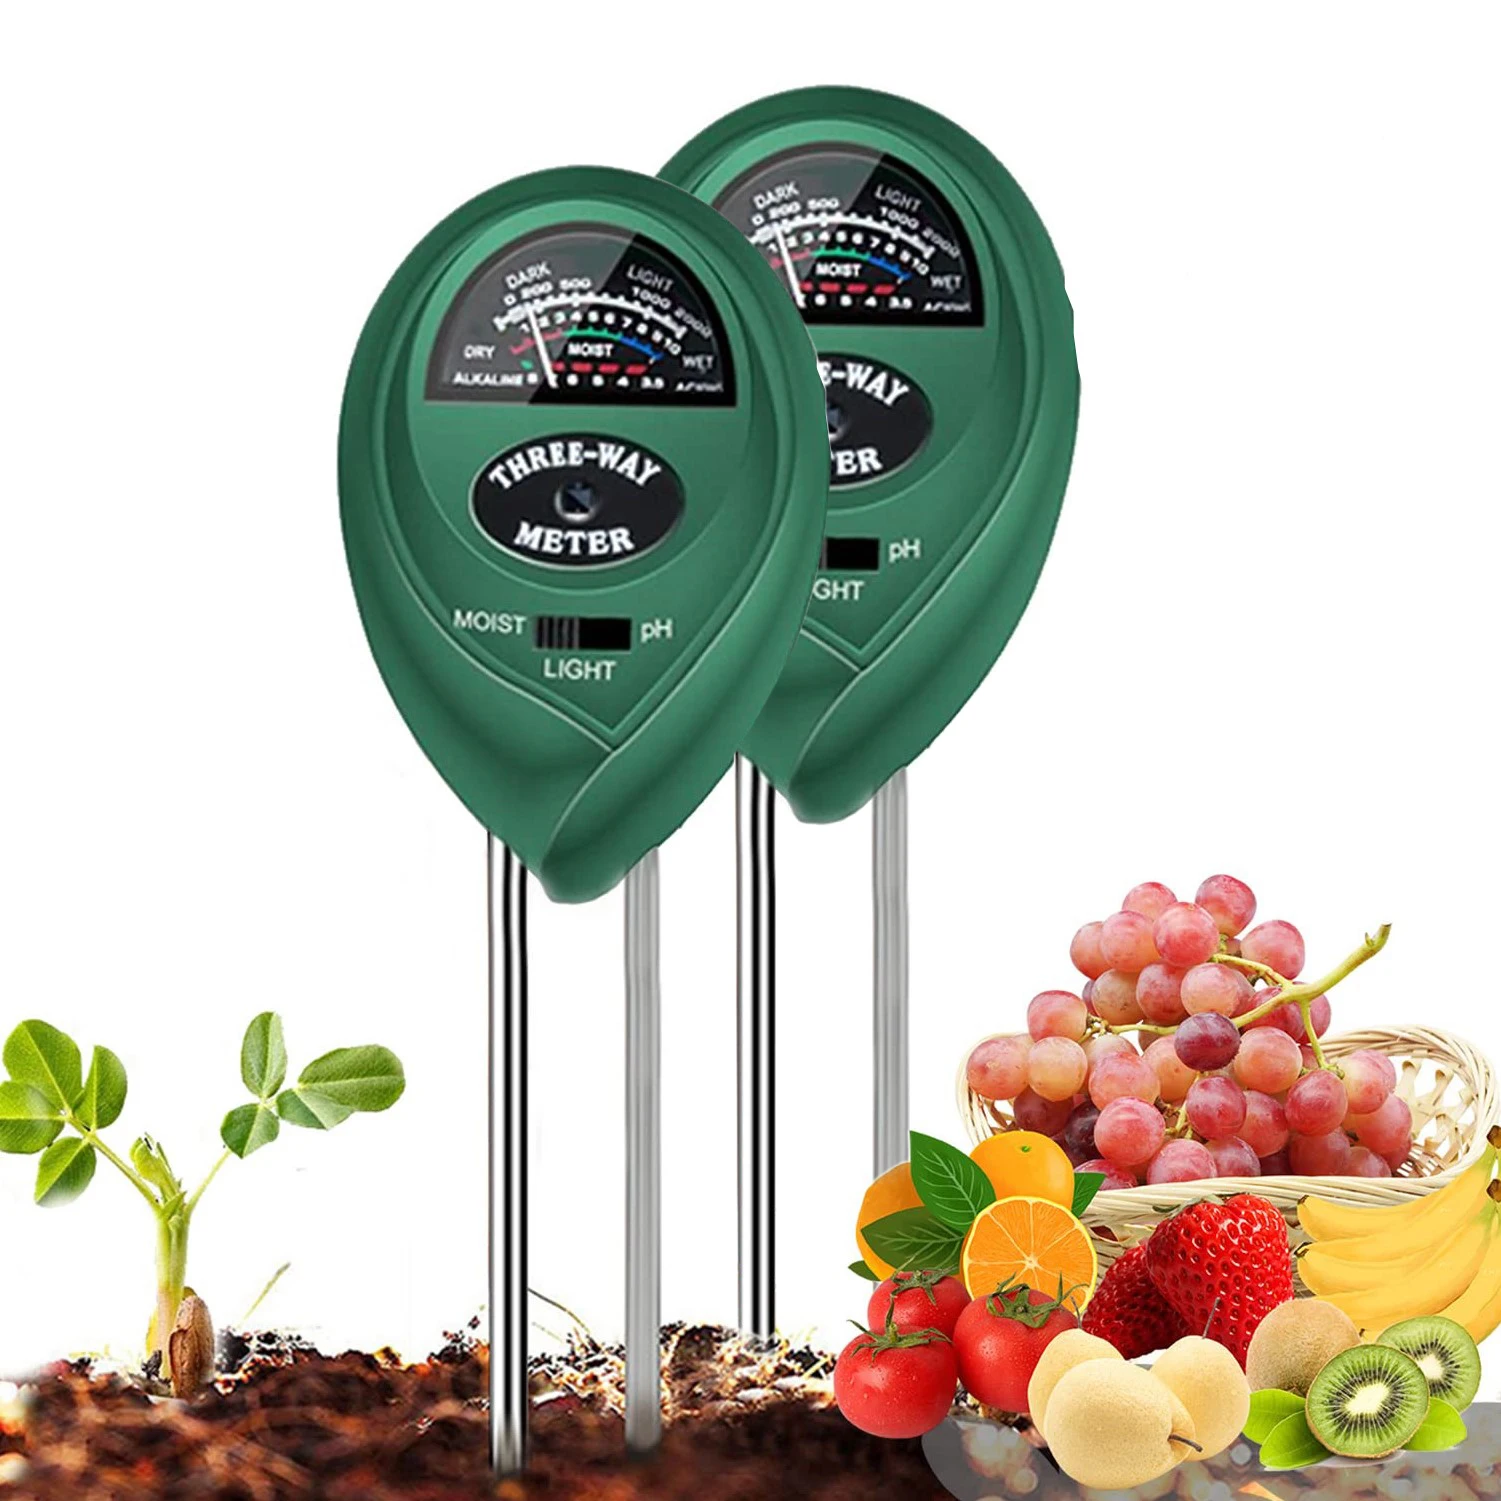 

2 Pcs Soil PH Meter, 3-in-1 Soil Moisture/Light/pH Tester Gardening Tool Kits for Plant Care, Great for Garden, Lawn, Farm